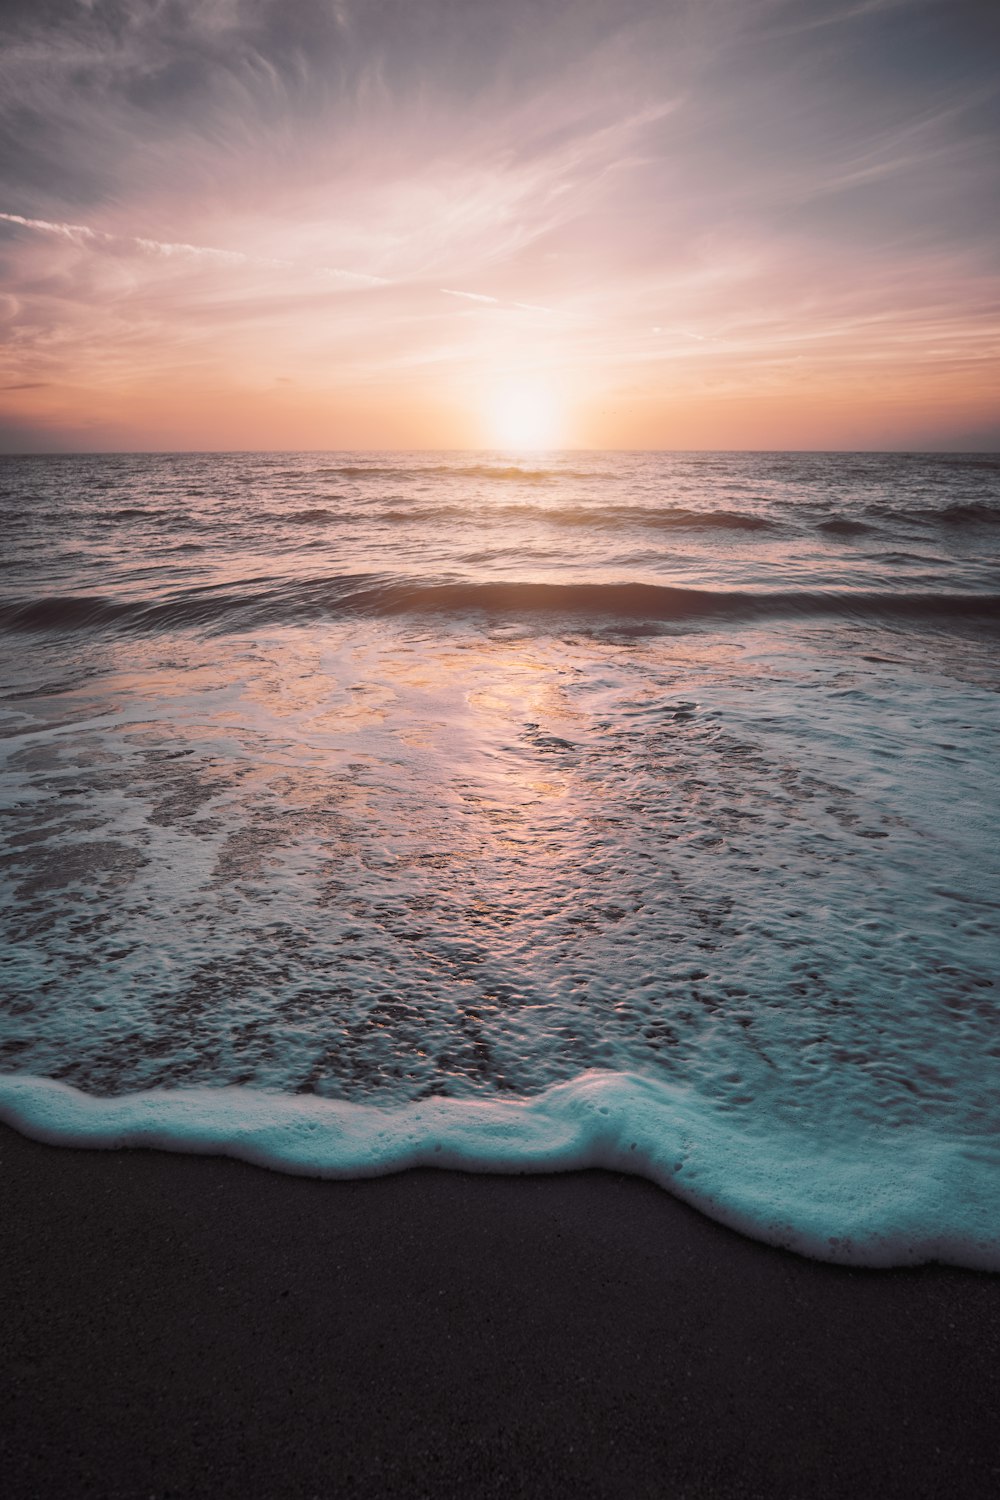 Onde dell'oceano che si infrangono sulla riva durante il tramonto